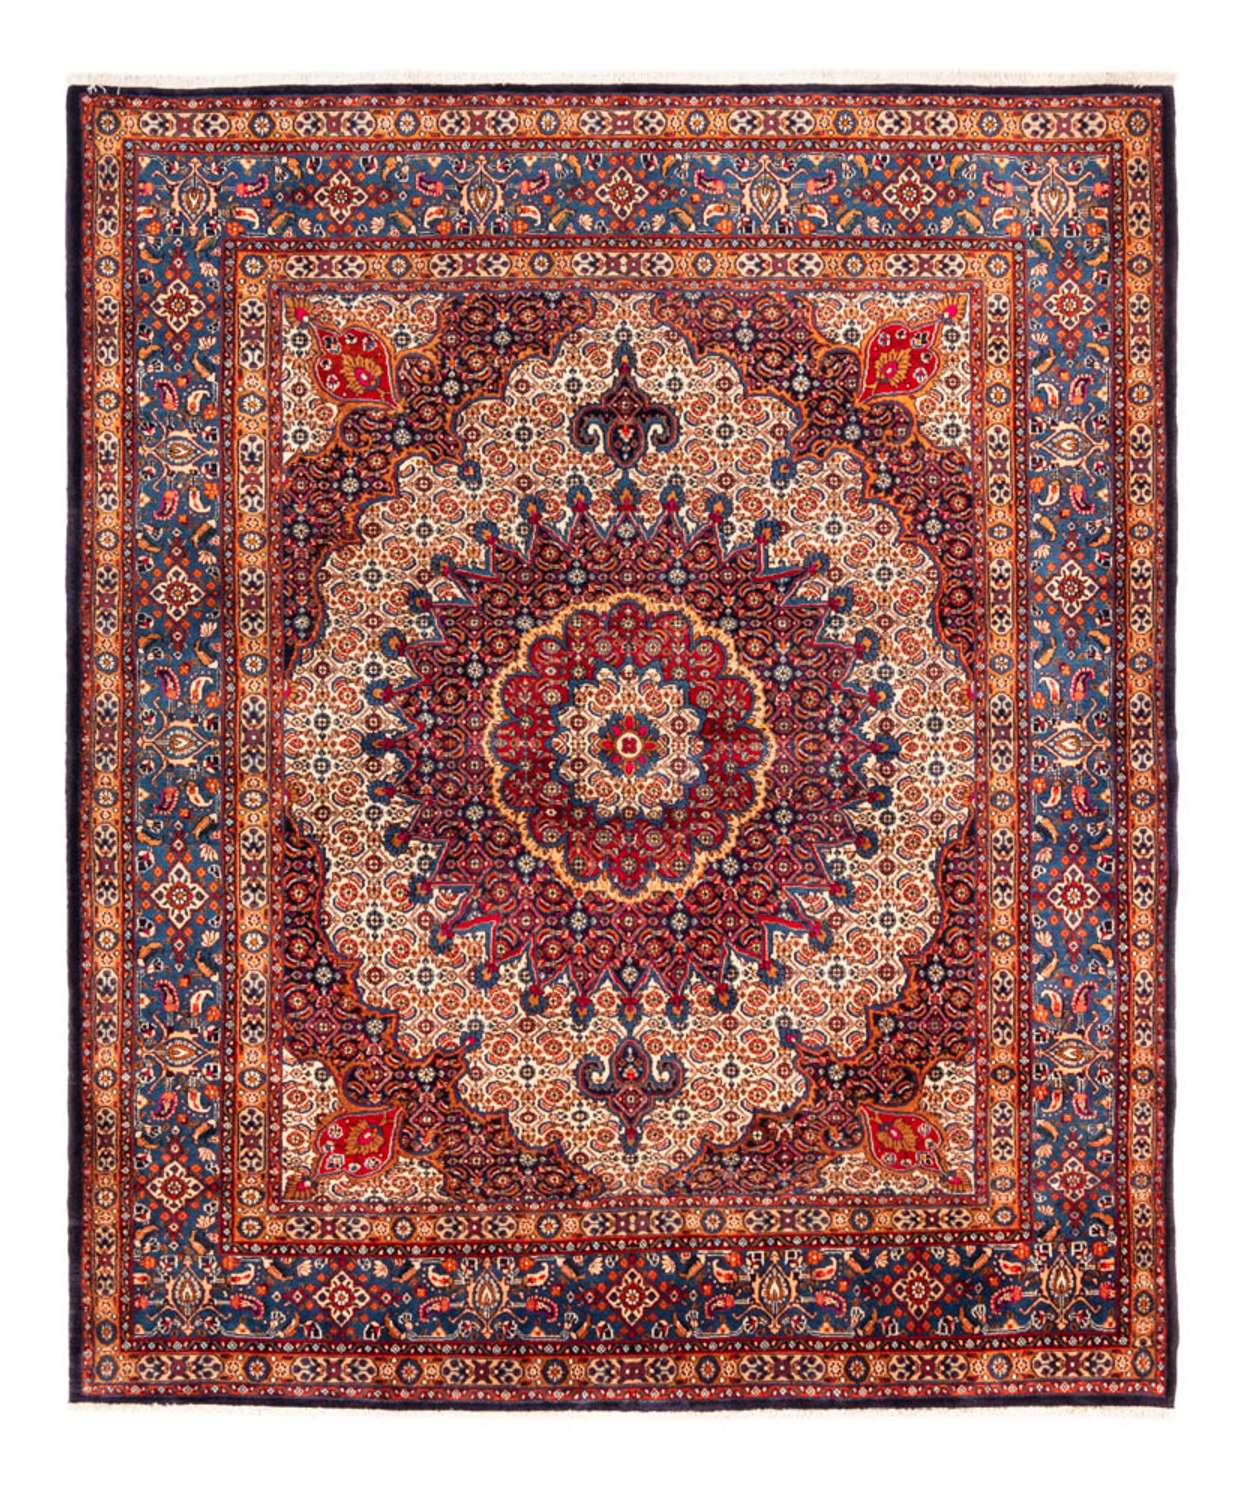 Persisk teppe - klassisk - 262 x 217 cm - rød